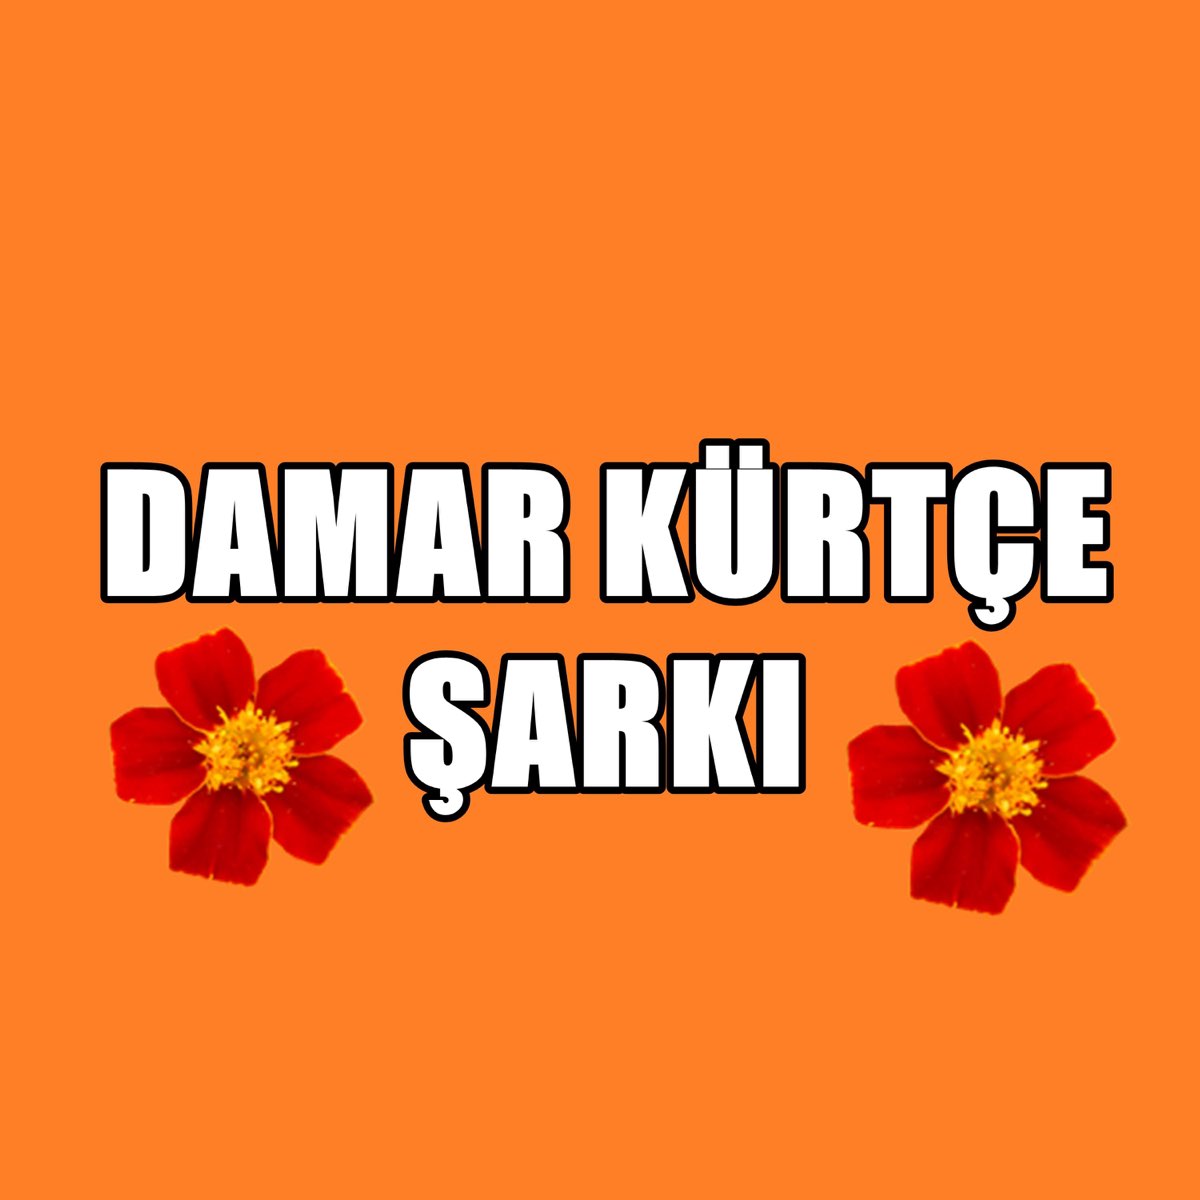 ‎Damar Kürtçe Şarkı (Tu Nızani) - Single - Album by Azad Medya - Apple Music